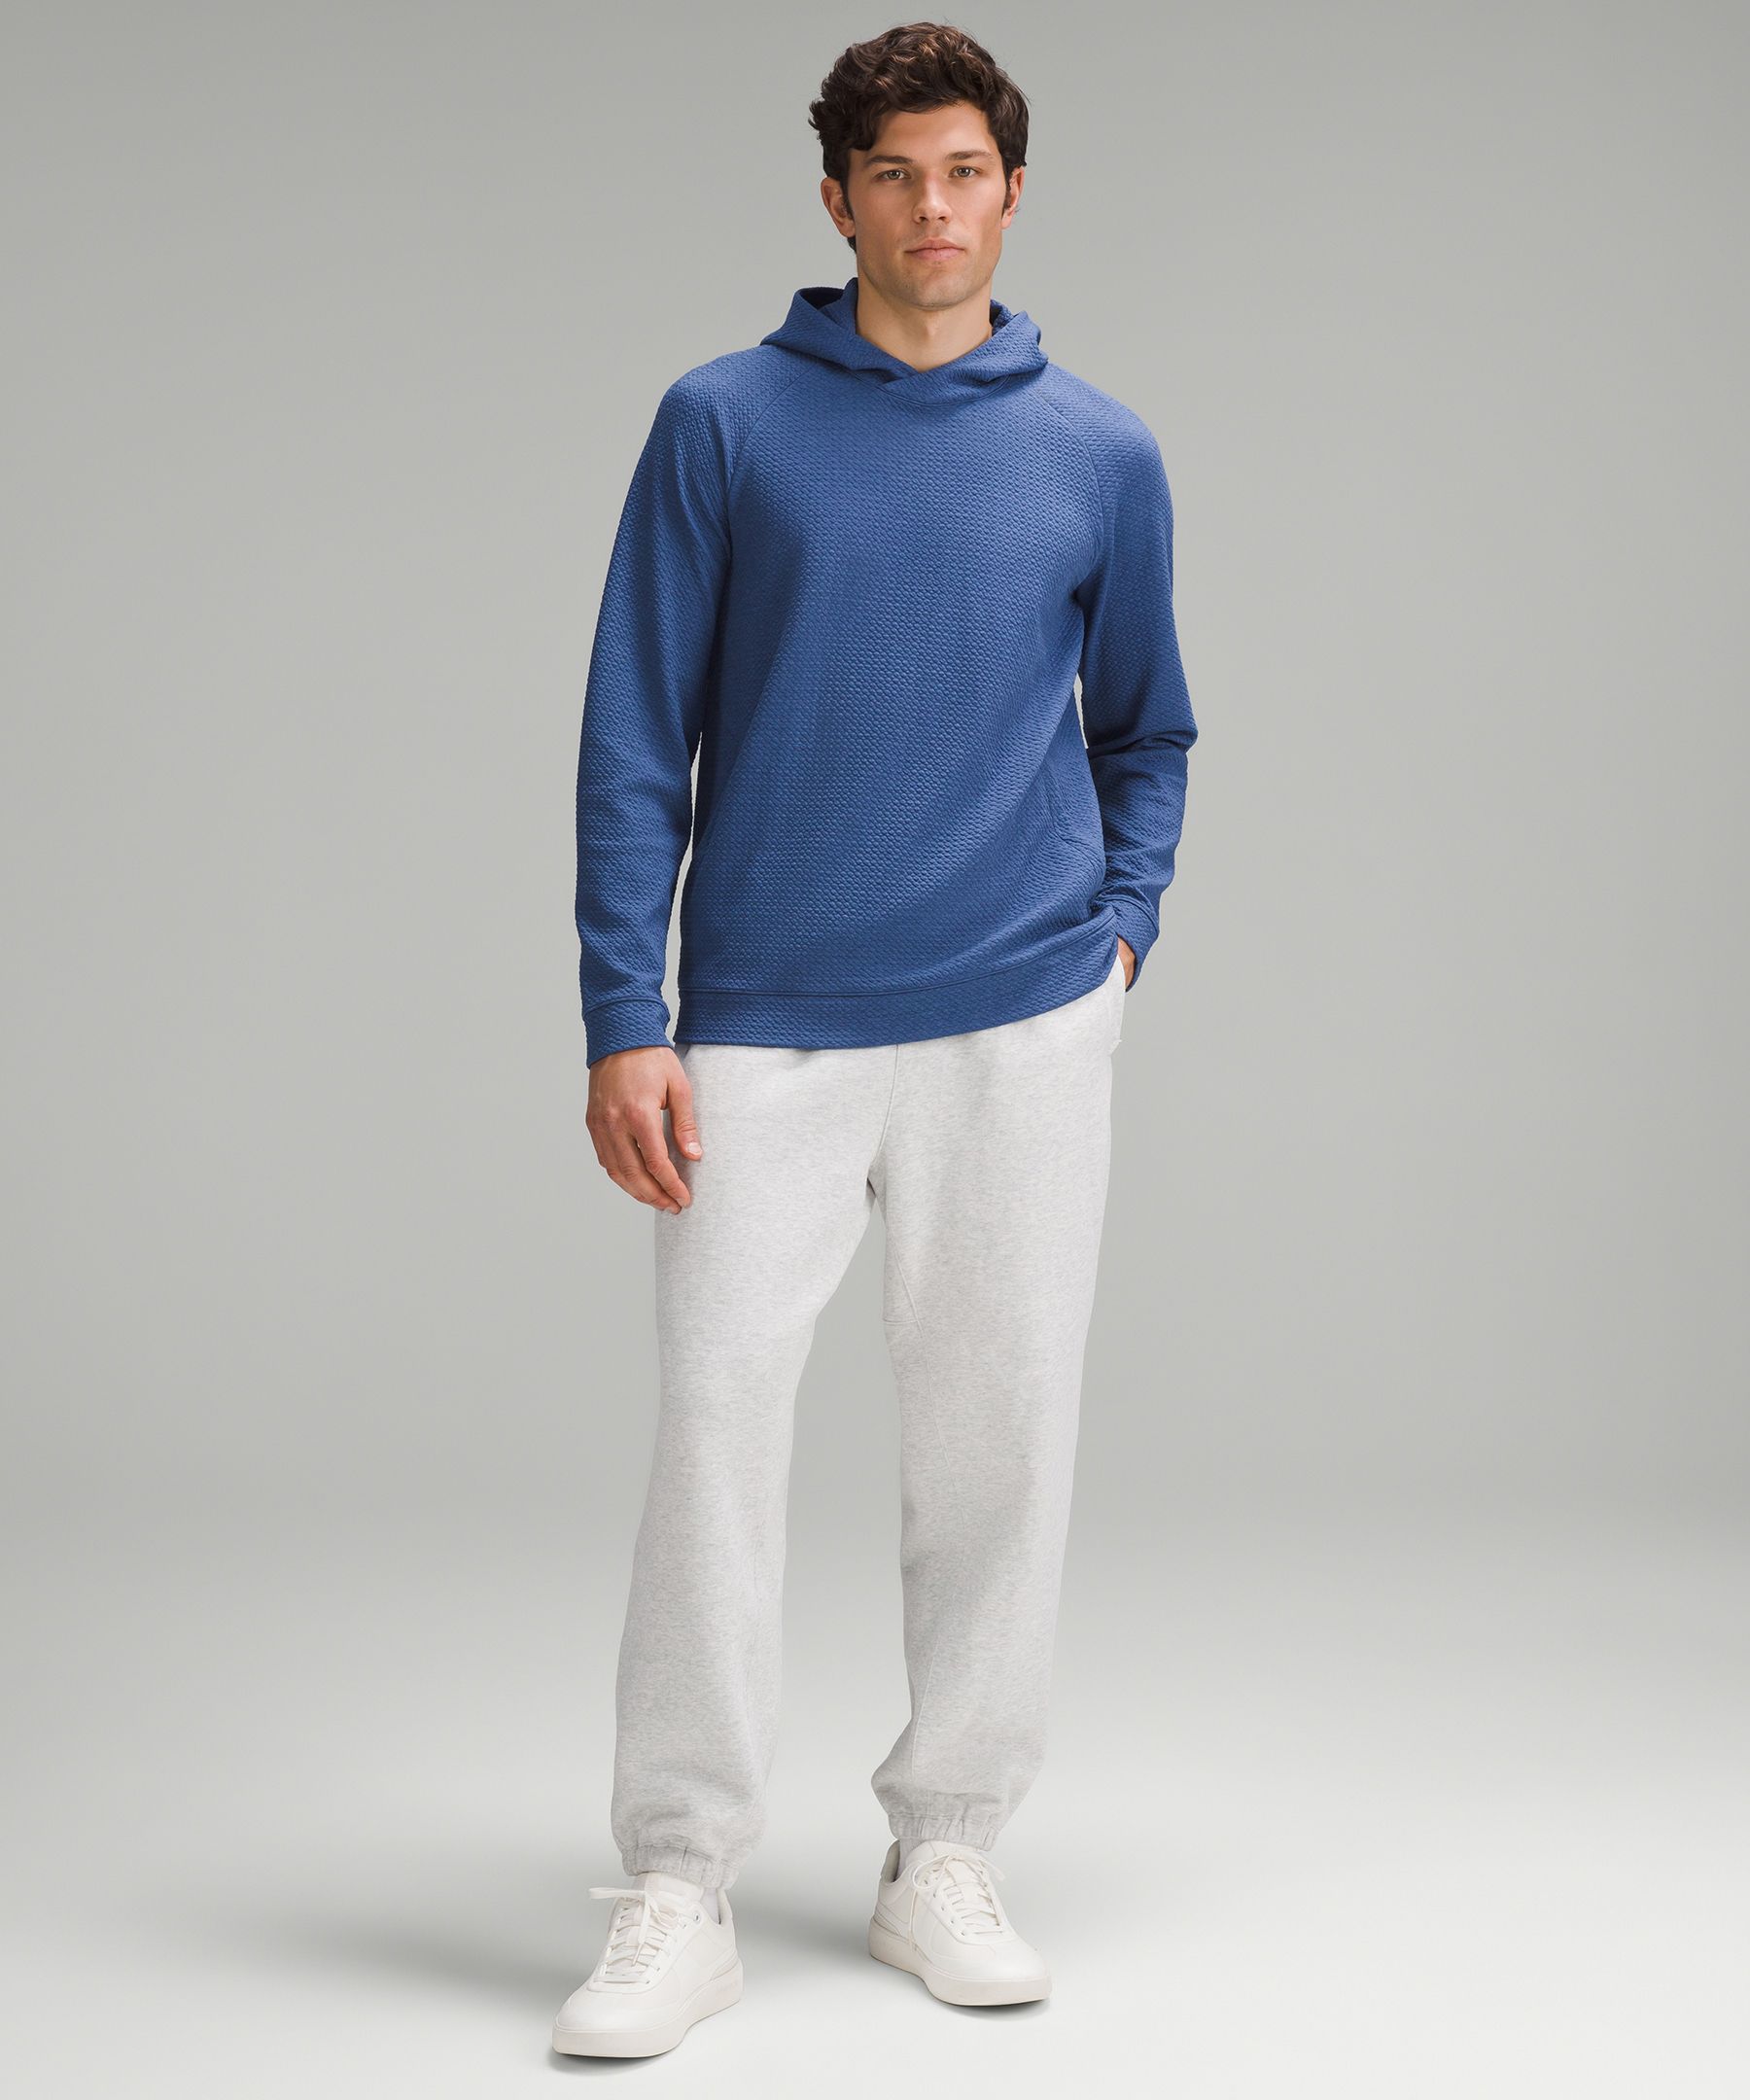 Knitwear & sweatshirt Lululemon Blue size S International in Polyester -  26638402